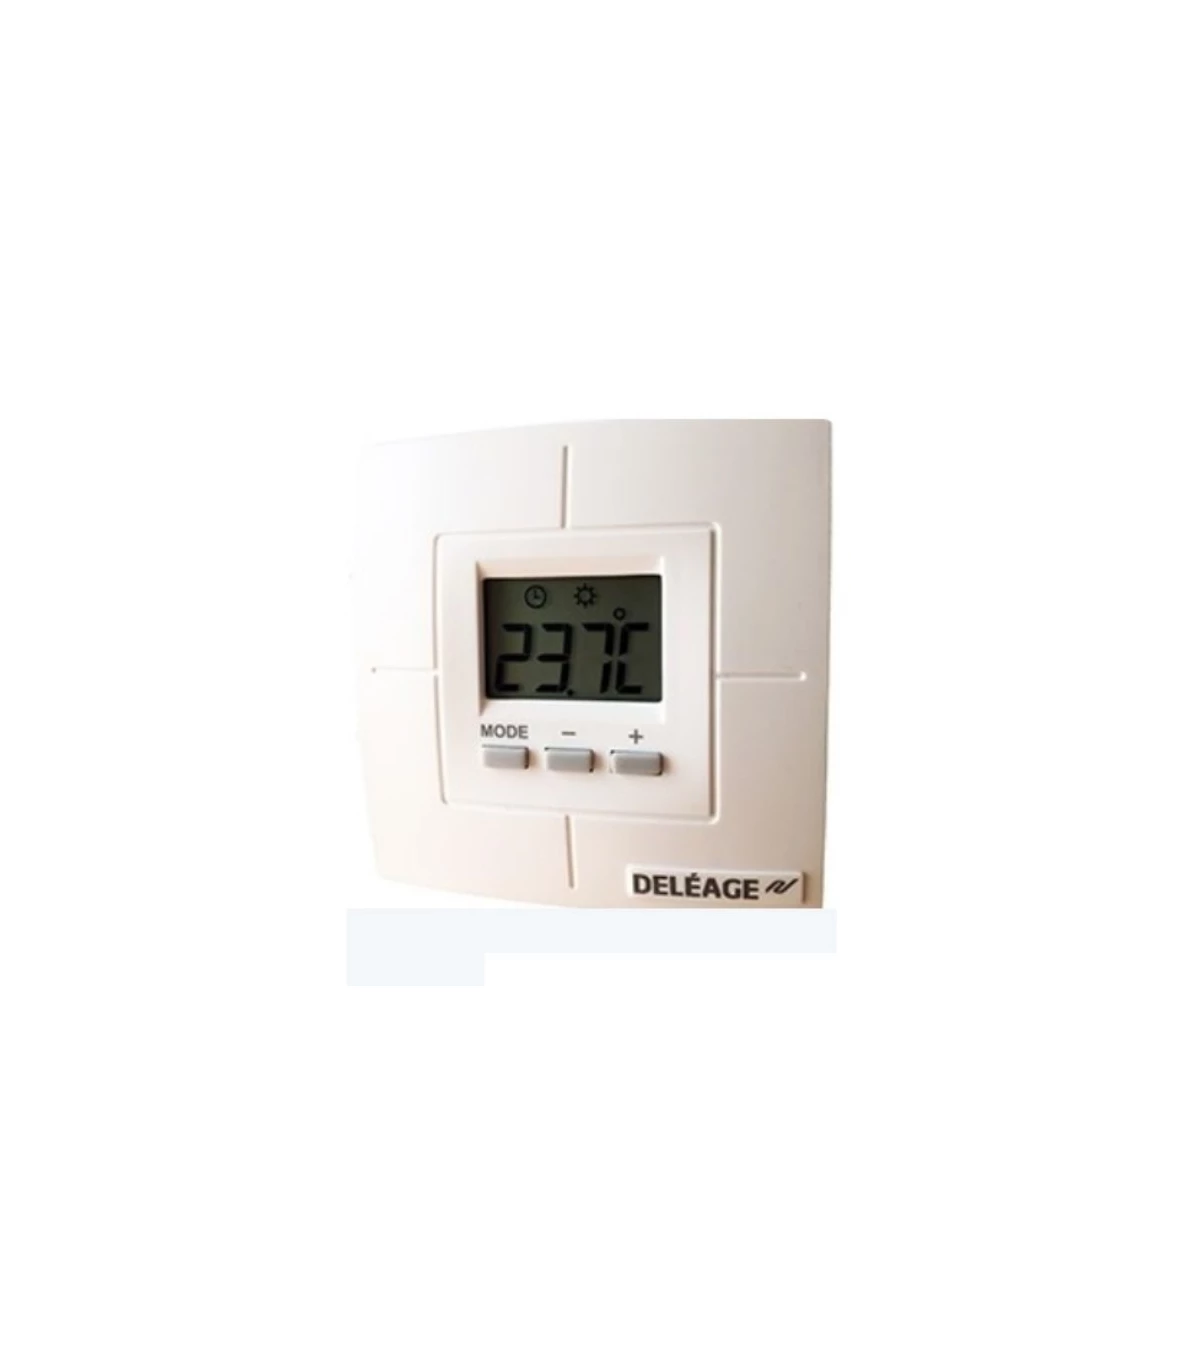 https://www.elecproshop.com/40033-superlarge_default/thermostat-ectemp-tai63-deleage-chauffage-au-sol.webp